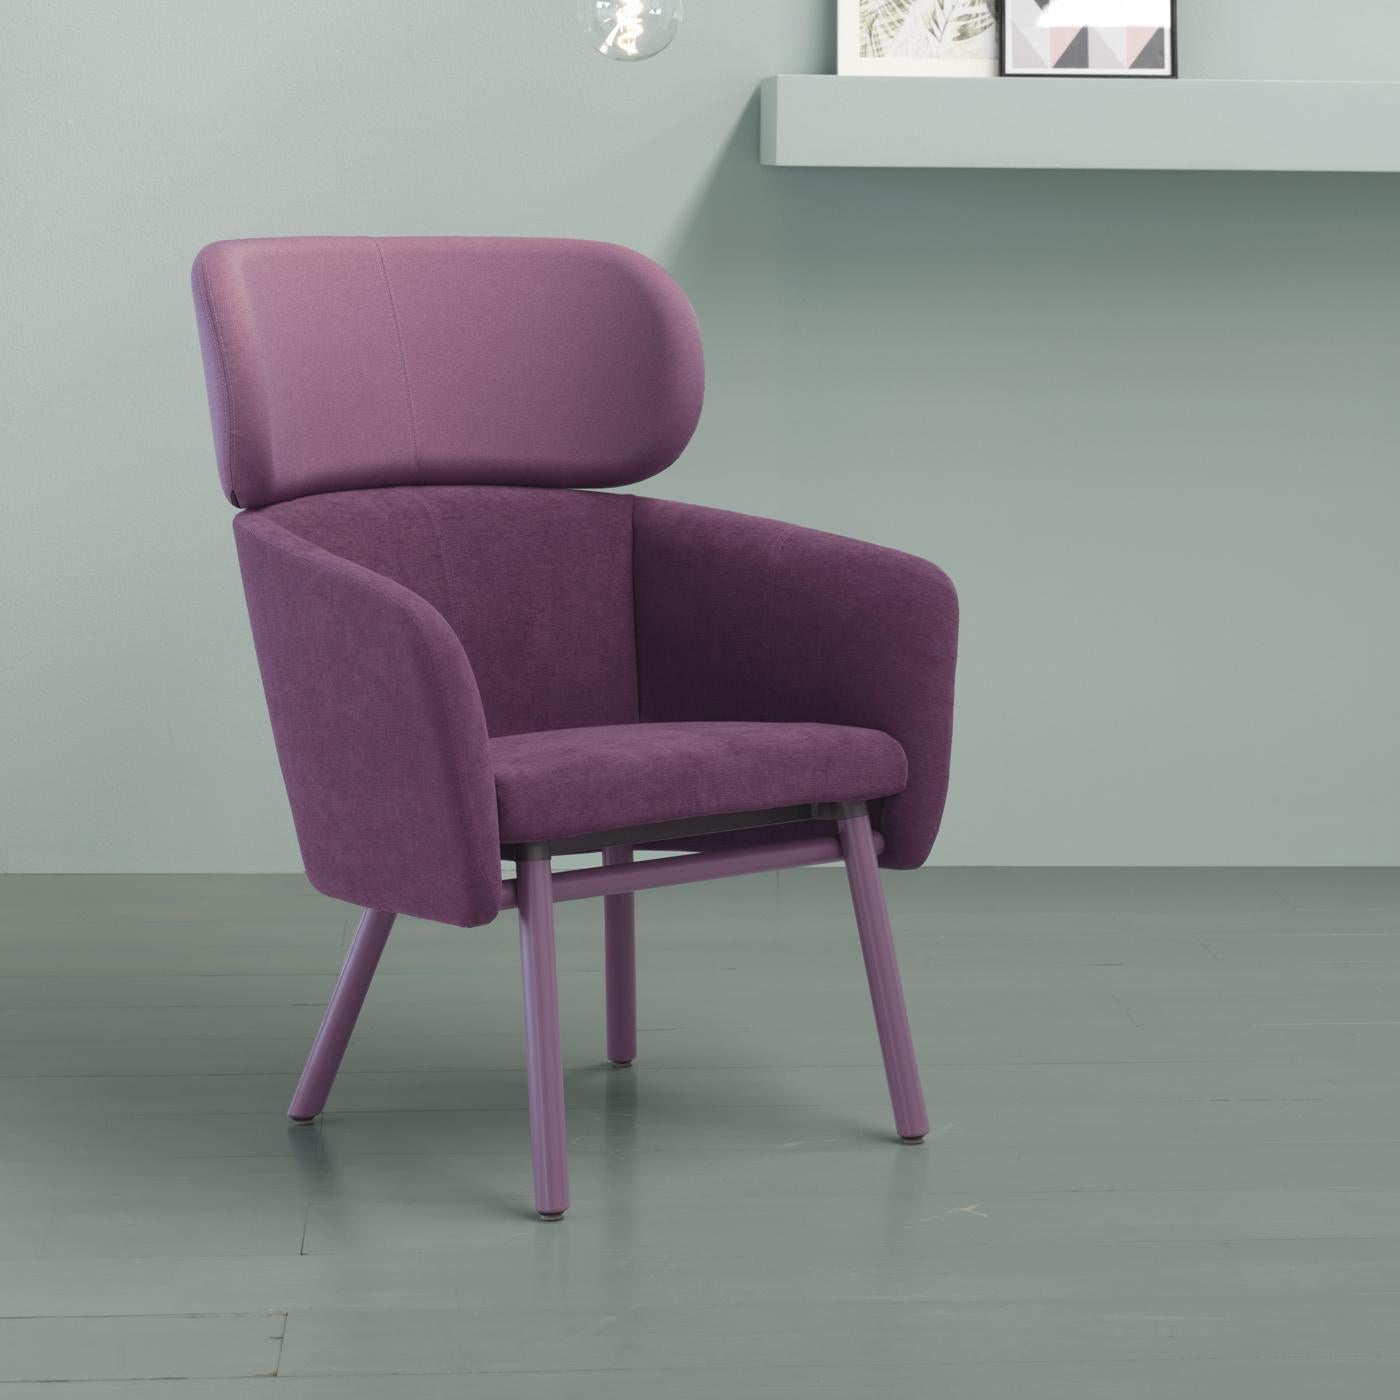 Une version plus généreuse de la chaise Balù raffinée conçue par Emilio Nanni, cette pièce étonnante insufflera de la sophistication à la fois à la salle à manger et au salon. D'un grand confort, il présente une structure élégante en bois de hêtre